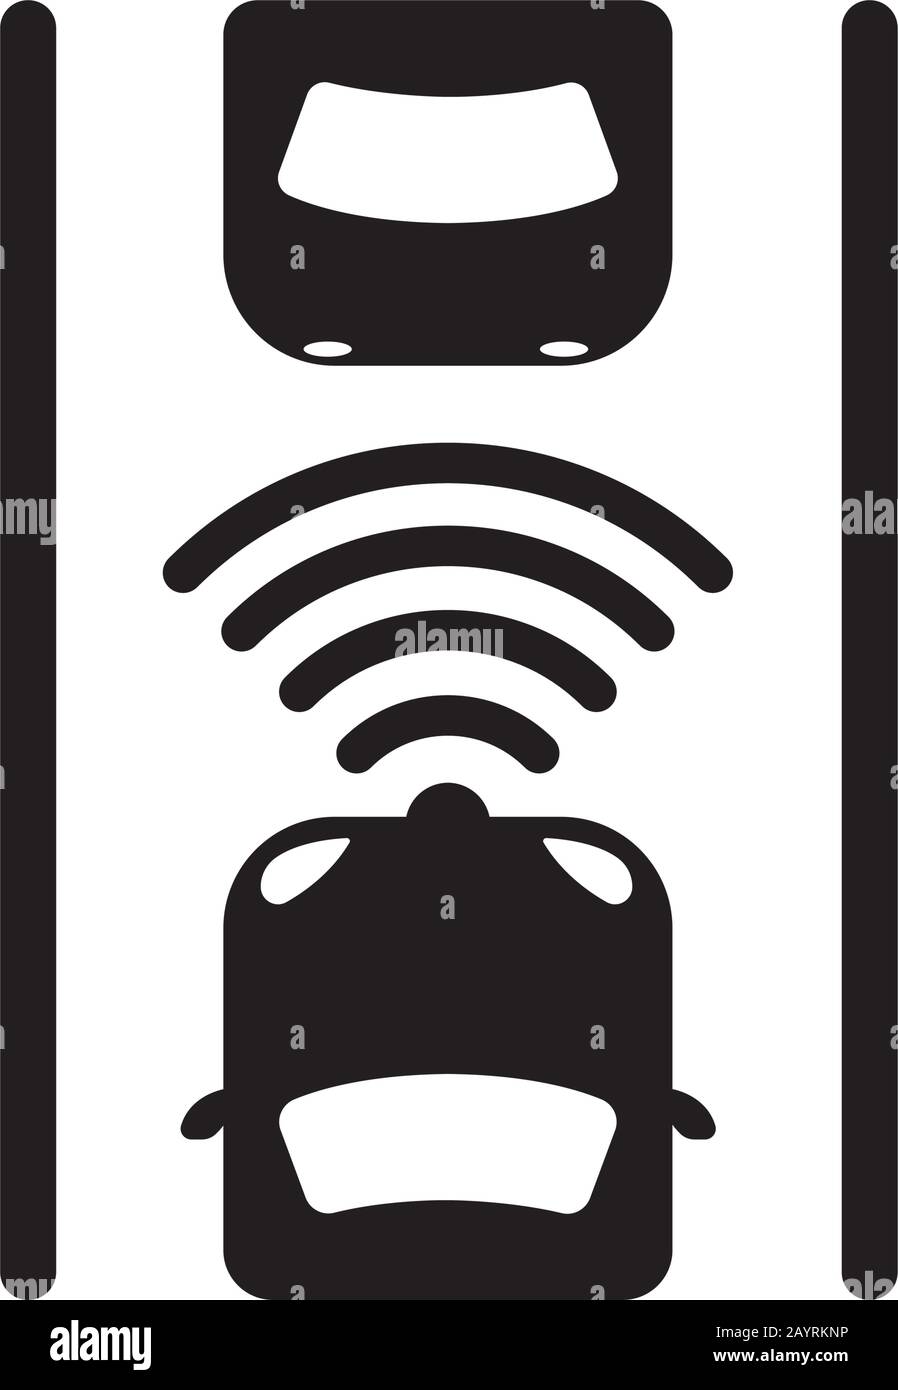 autonomous car / self-driving car icon Stock Vector